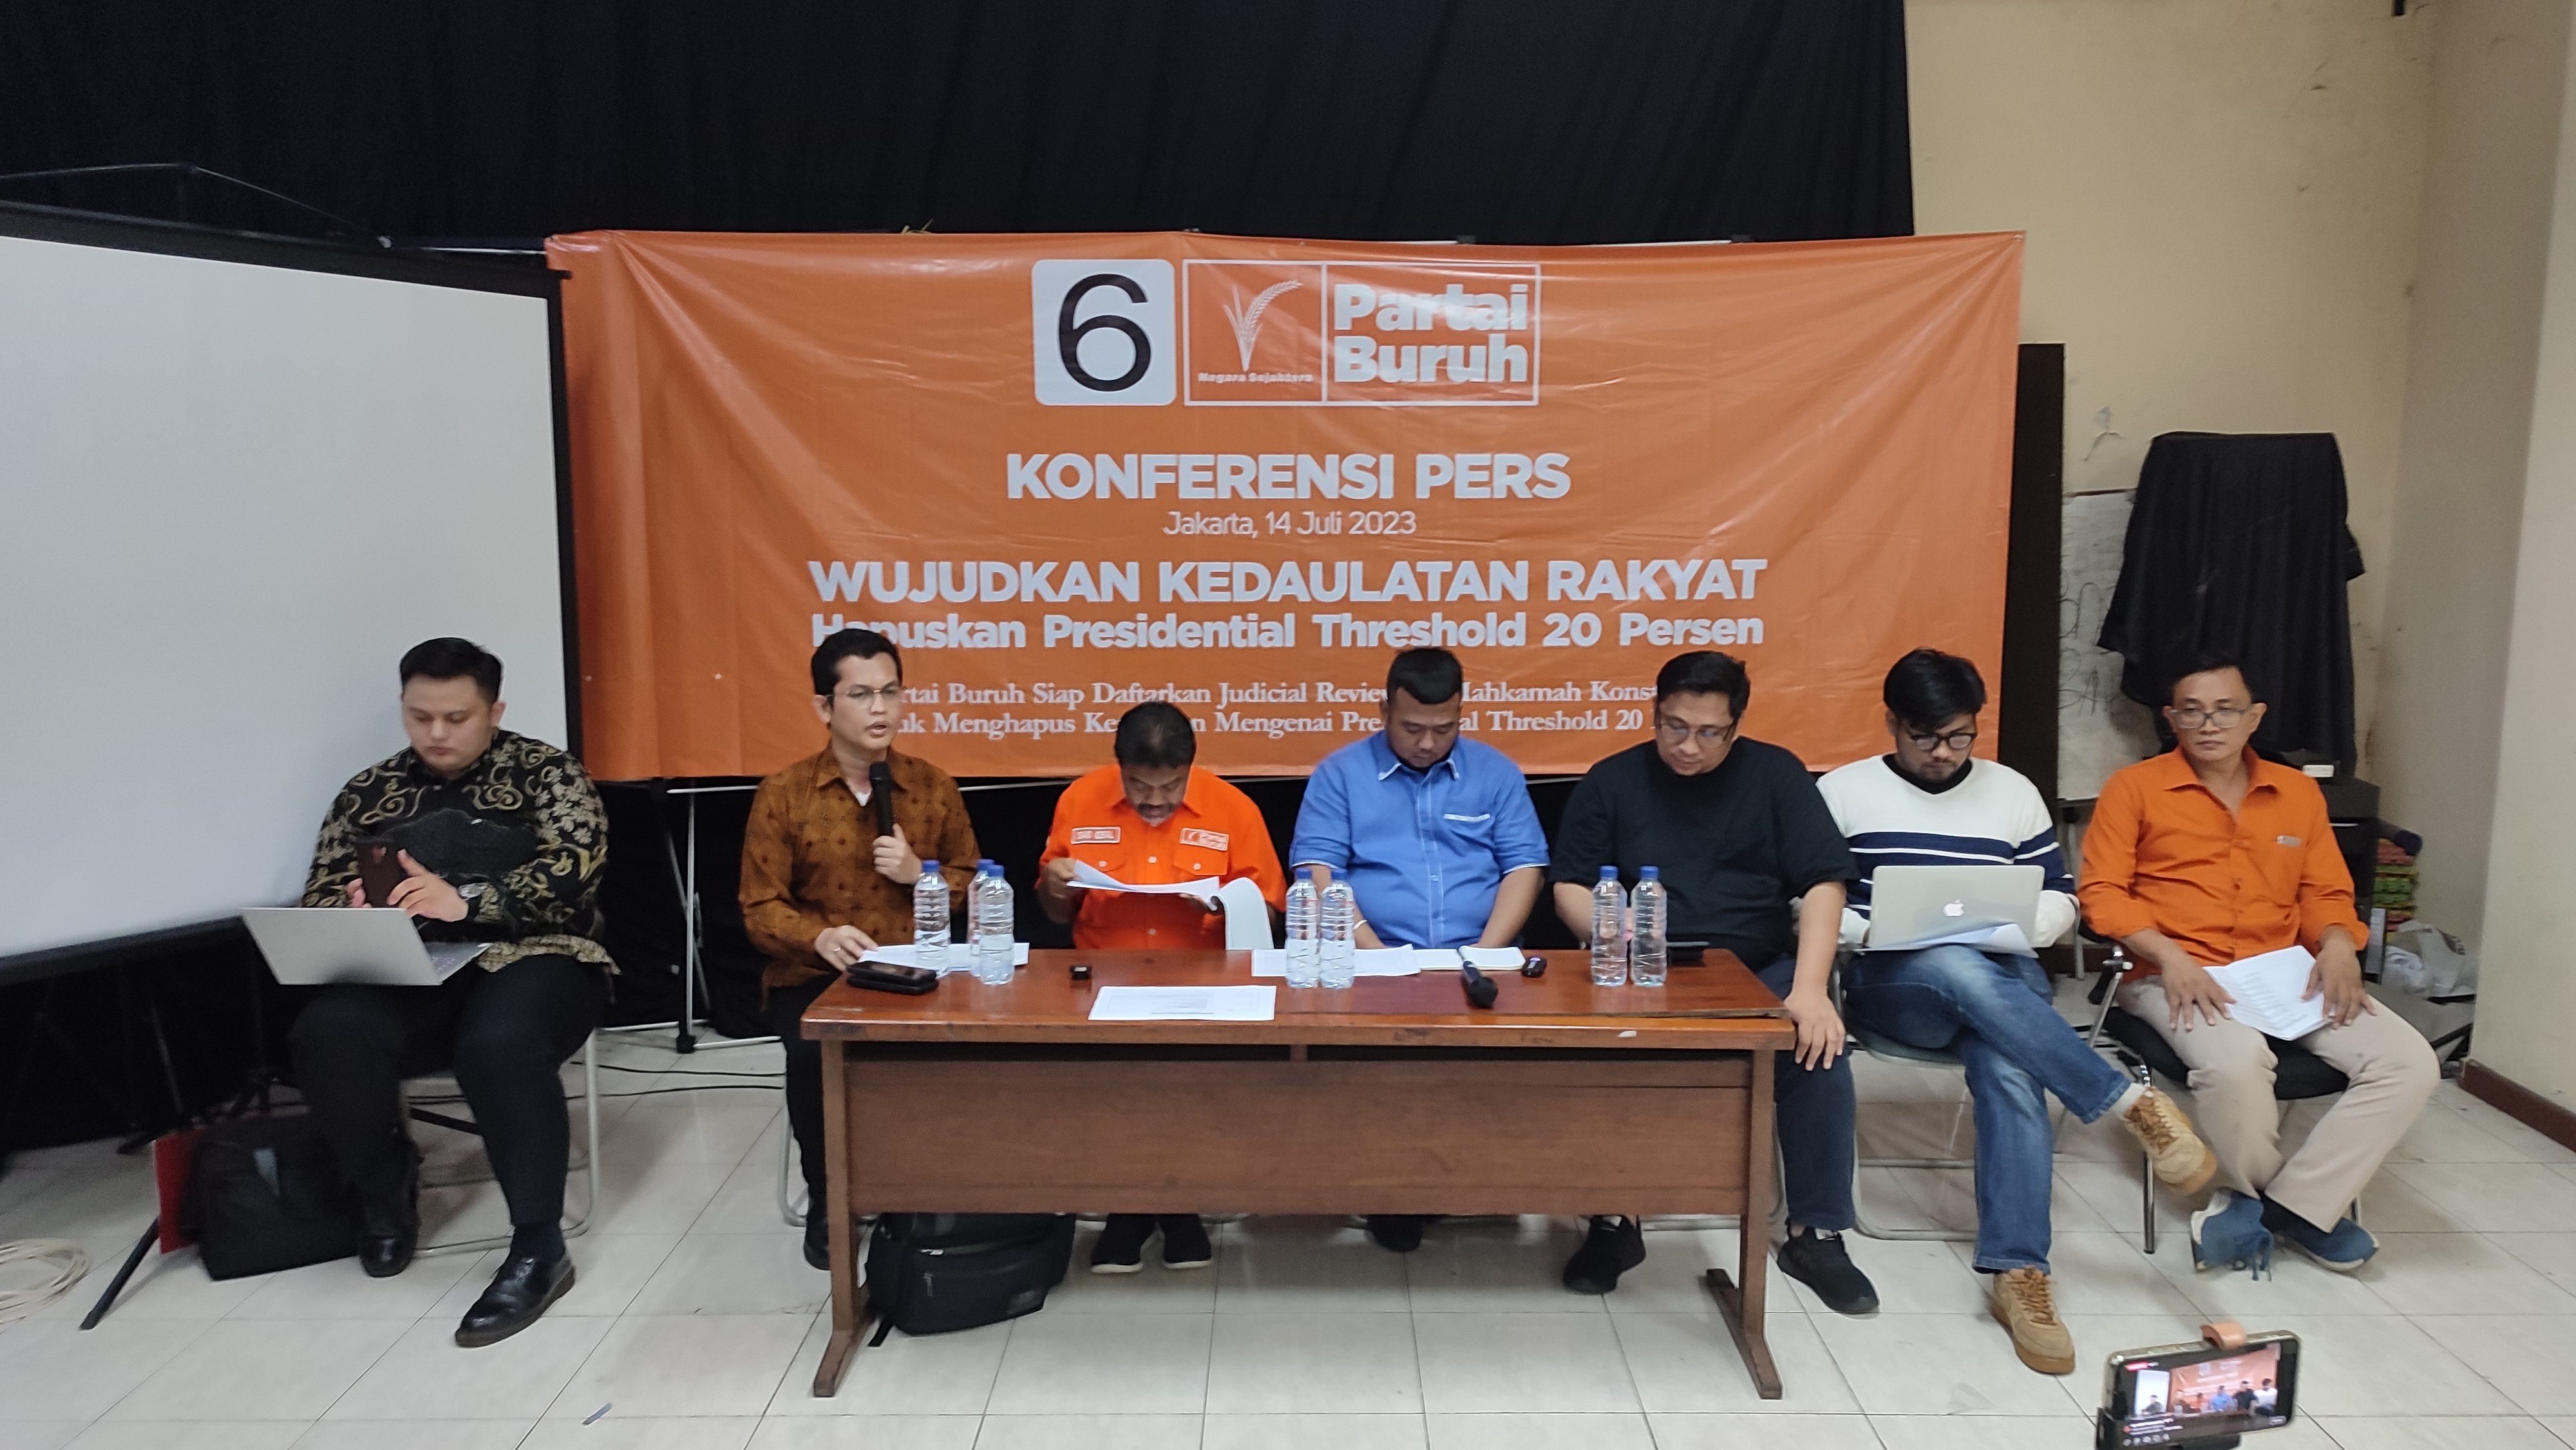 Partai Buruh: Indonesia Pionir 